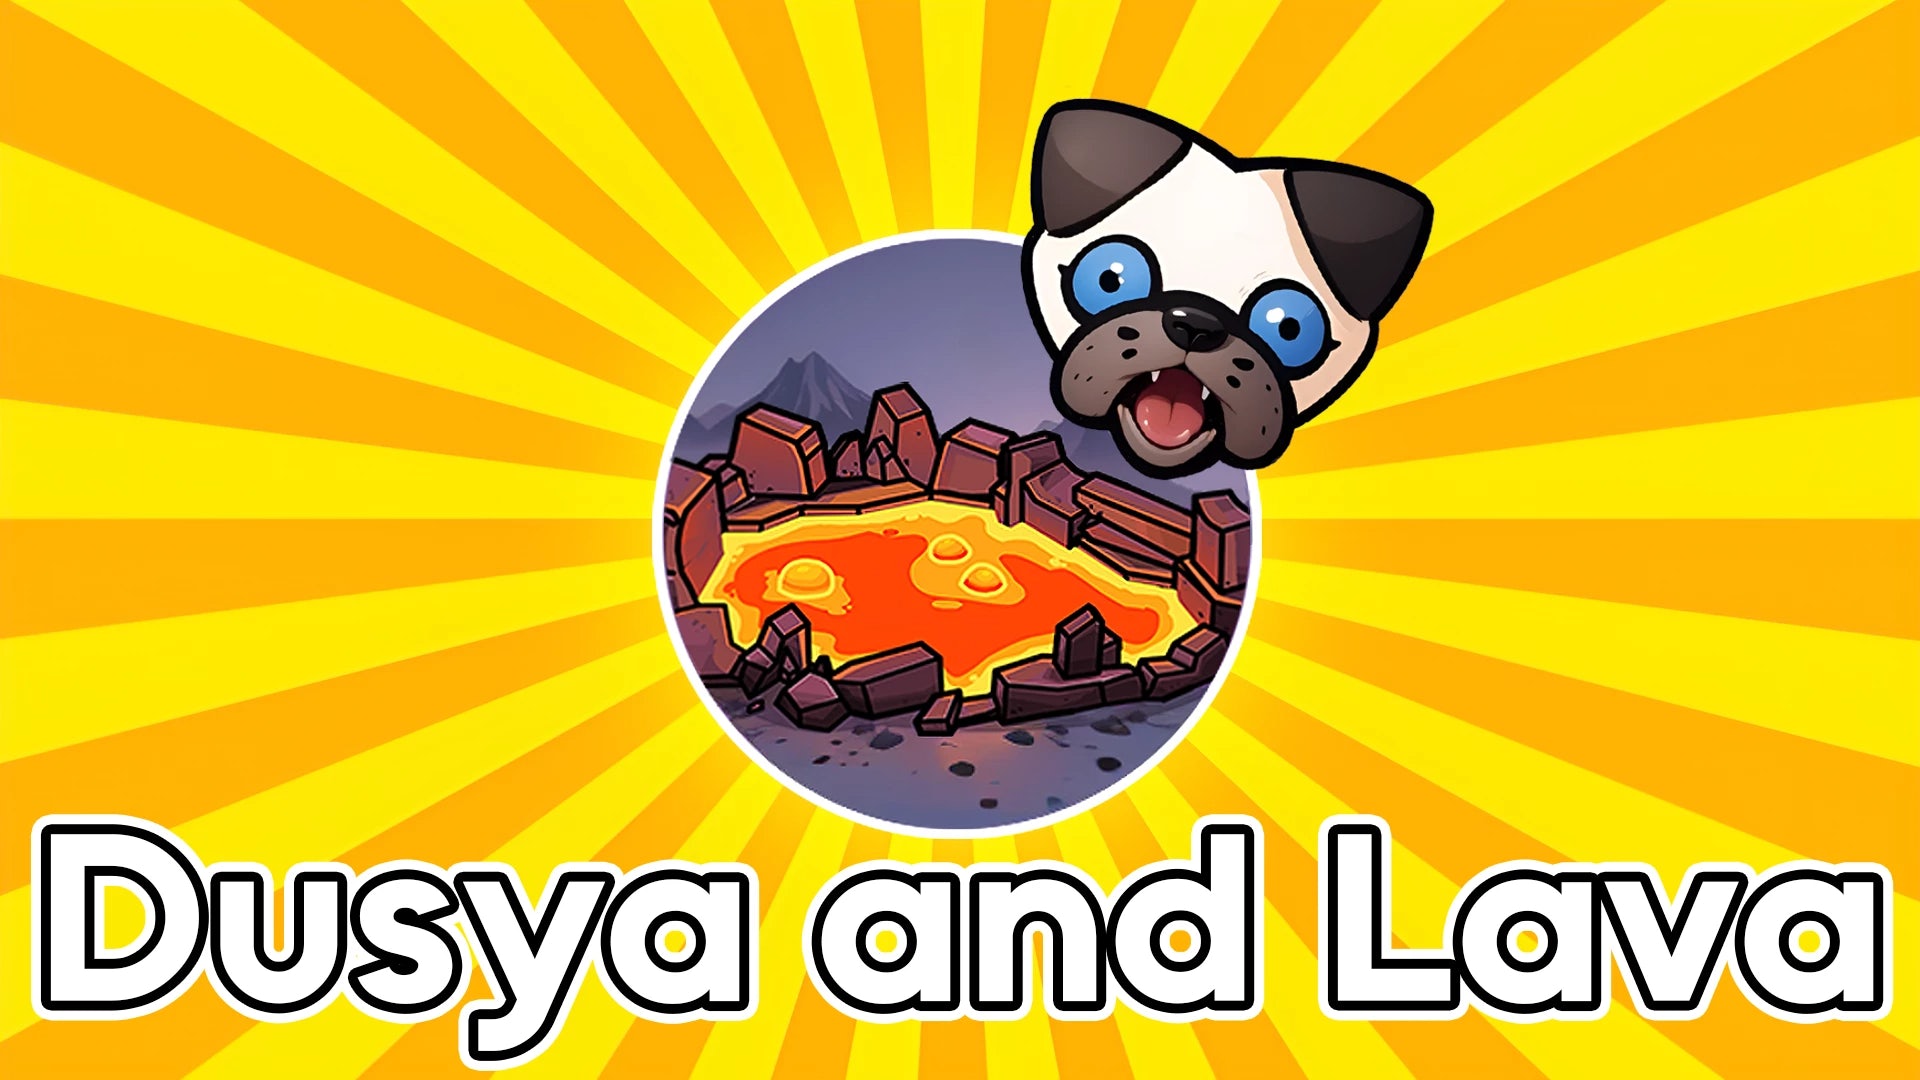 Dusya and Lava